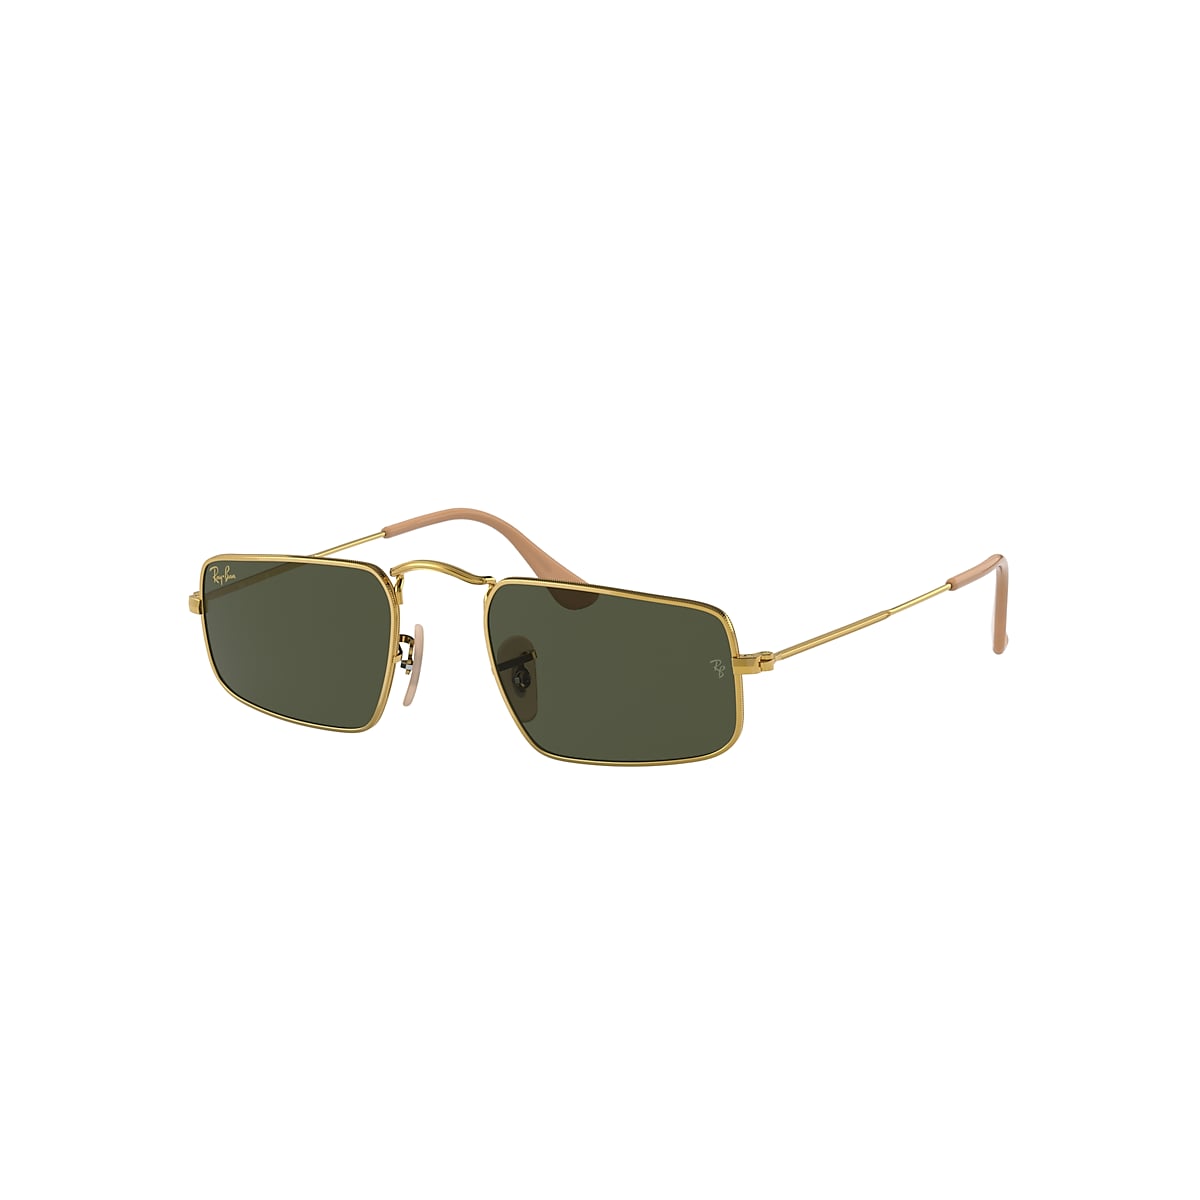 Ray-Ban Julie Sunglasses Gold Frame Green Lenses 46-20